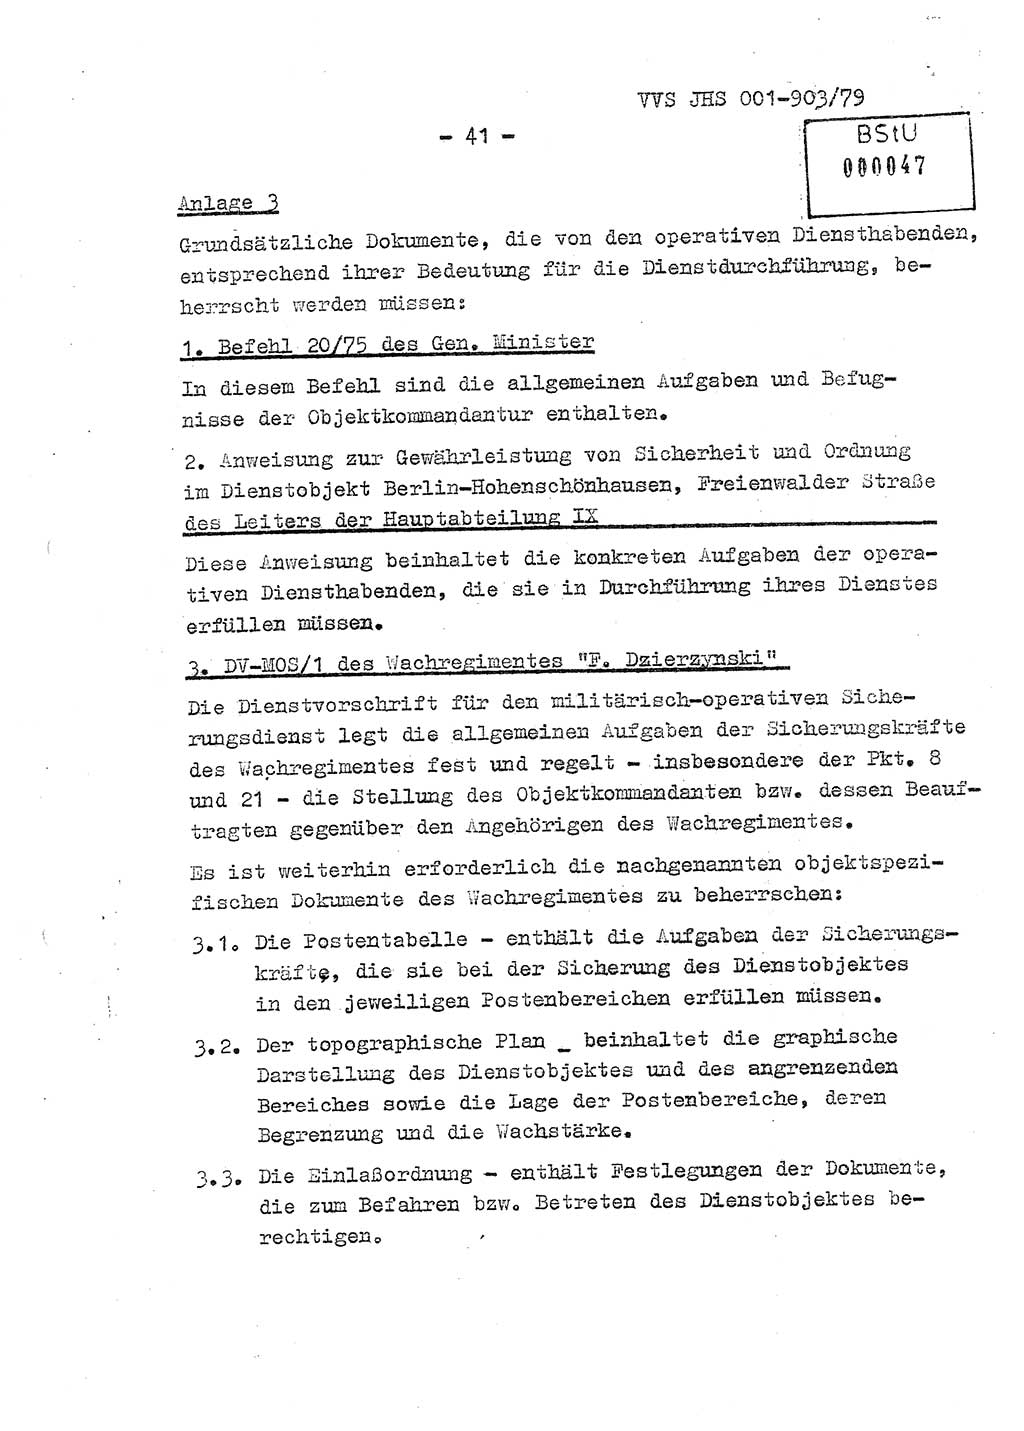 Fachschulabschlußarbeit Oberleutnant Jochen Pfeffer (HA Ⅸ/AGL), Ministerium für Staatssicherheit (MfS) [Deutsche Demokratische Republik (DDR)], Juristische Hochschule (JHS), Vertrauliche Verschlußsache (VVS) 001-903/79, Potsdam 1979, Seite 41 (FS-Abschl.-Arb. MfS DDR JHS VVS 001-903/79 1979, S. 41)